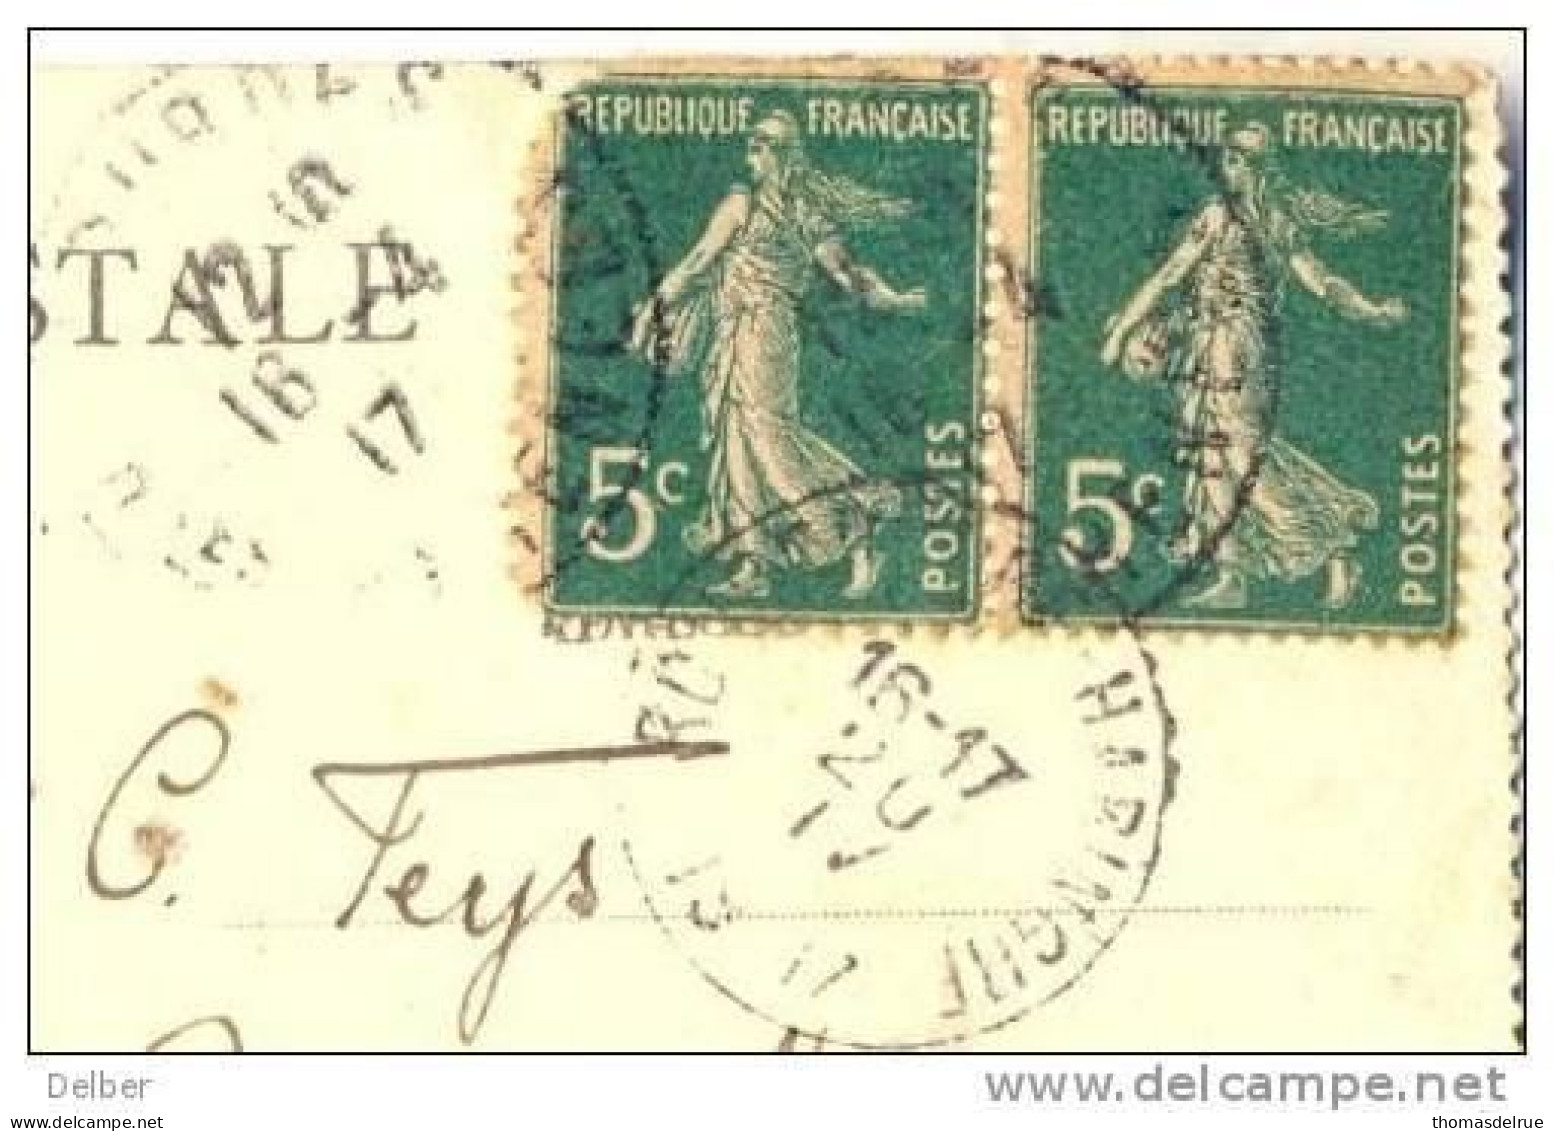 _G986: Carte Postale: LOURDES -Mosaïque:L(Incarnationc 5c+5c Semeuse: - AK: ROUSBRUGGE-HARINGHE 20.IV1917:.zegel Beschad - Not Occupied Zone